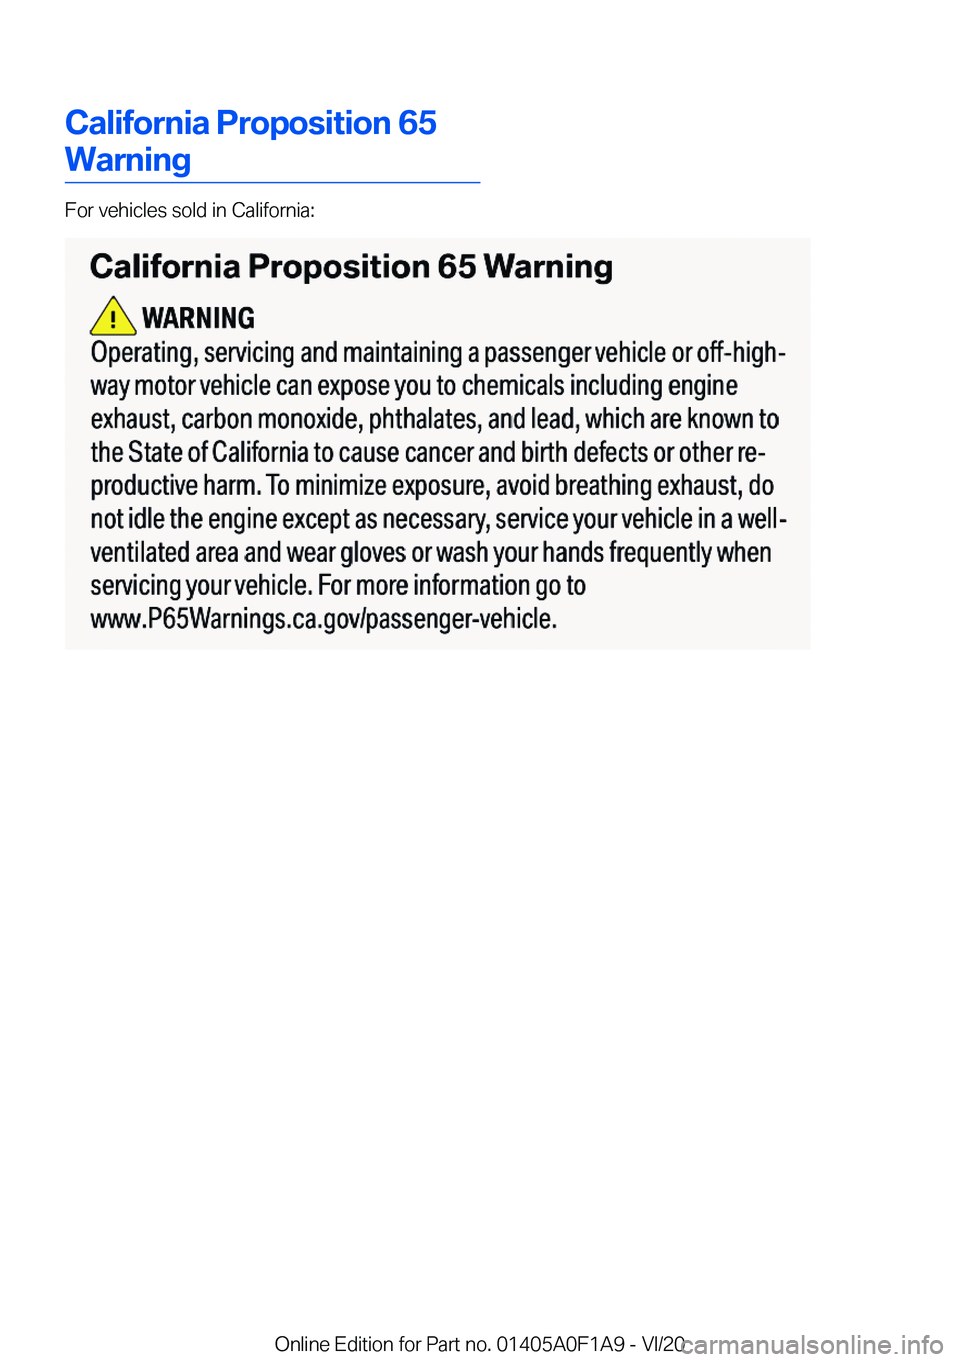 BMW 2 SERIES COUPE 2021  Owners Manual �C�a�l�i�f�o�r�n�i�a��P�r�o�p�o�s�i�t�i�o�n��6�5
�W�a�r�n�i�n�g
�F�o�r��v�e�h�i�c�l�e�s��s�o�l�d��i�n��C�a�l�i�f�o�r�n�i�a�:
�O�n�l�i�n�e��E�d�i�t�i�o�n��f�o�r��P�a�r�t��n�o�.��0�1�4�0�5�A�